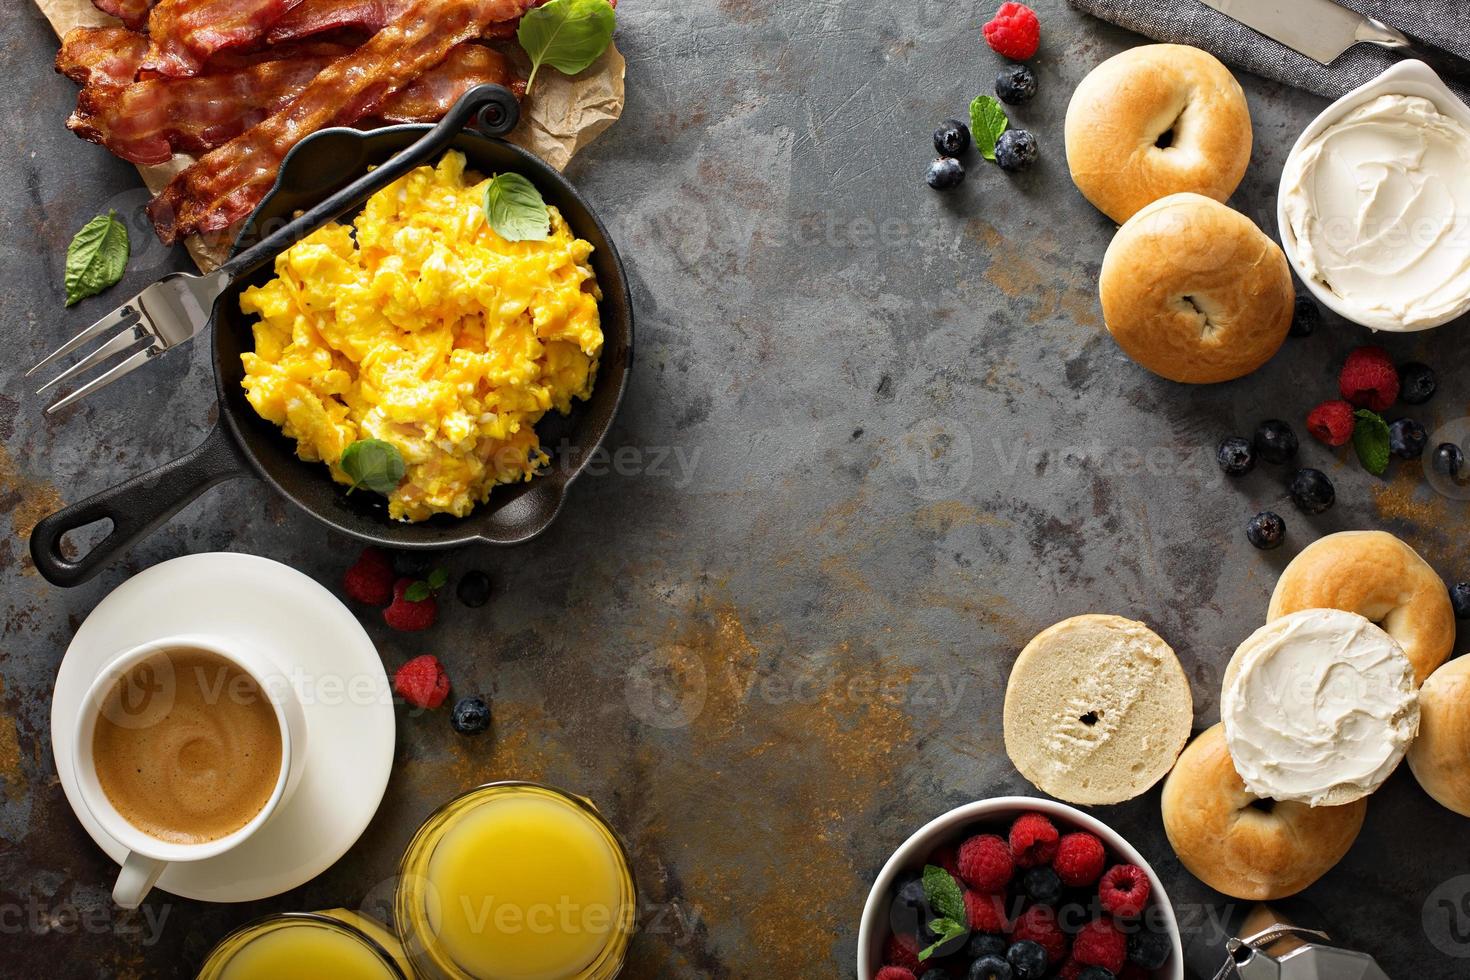 grande café da manhã com bacon e ovos mexidos foto